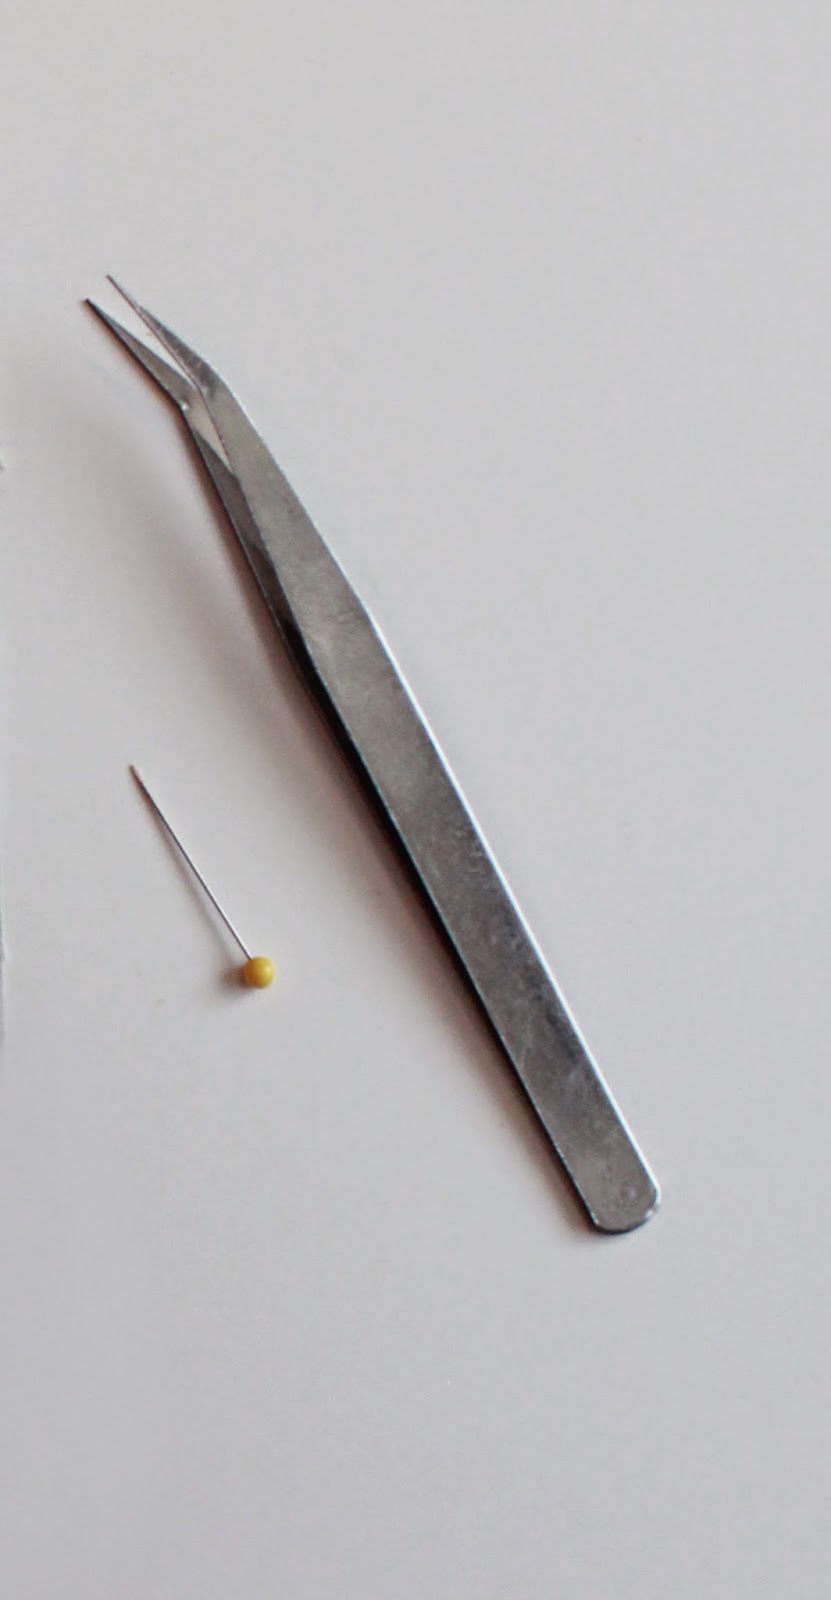 bent tip tweezers for curved piecing